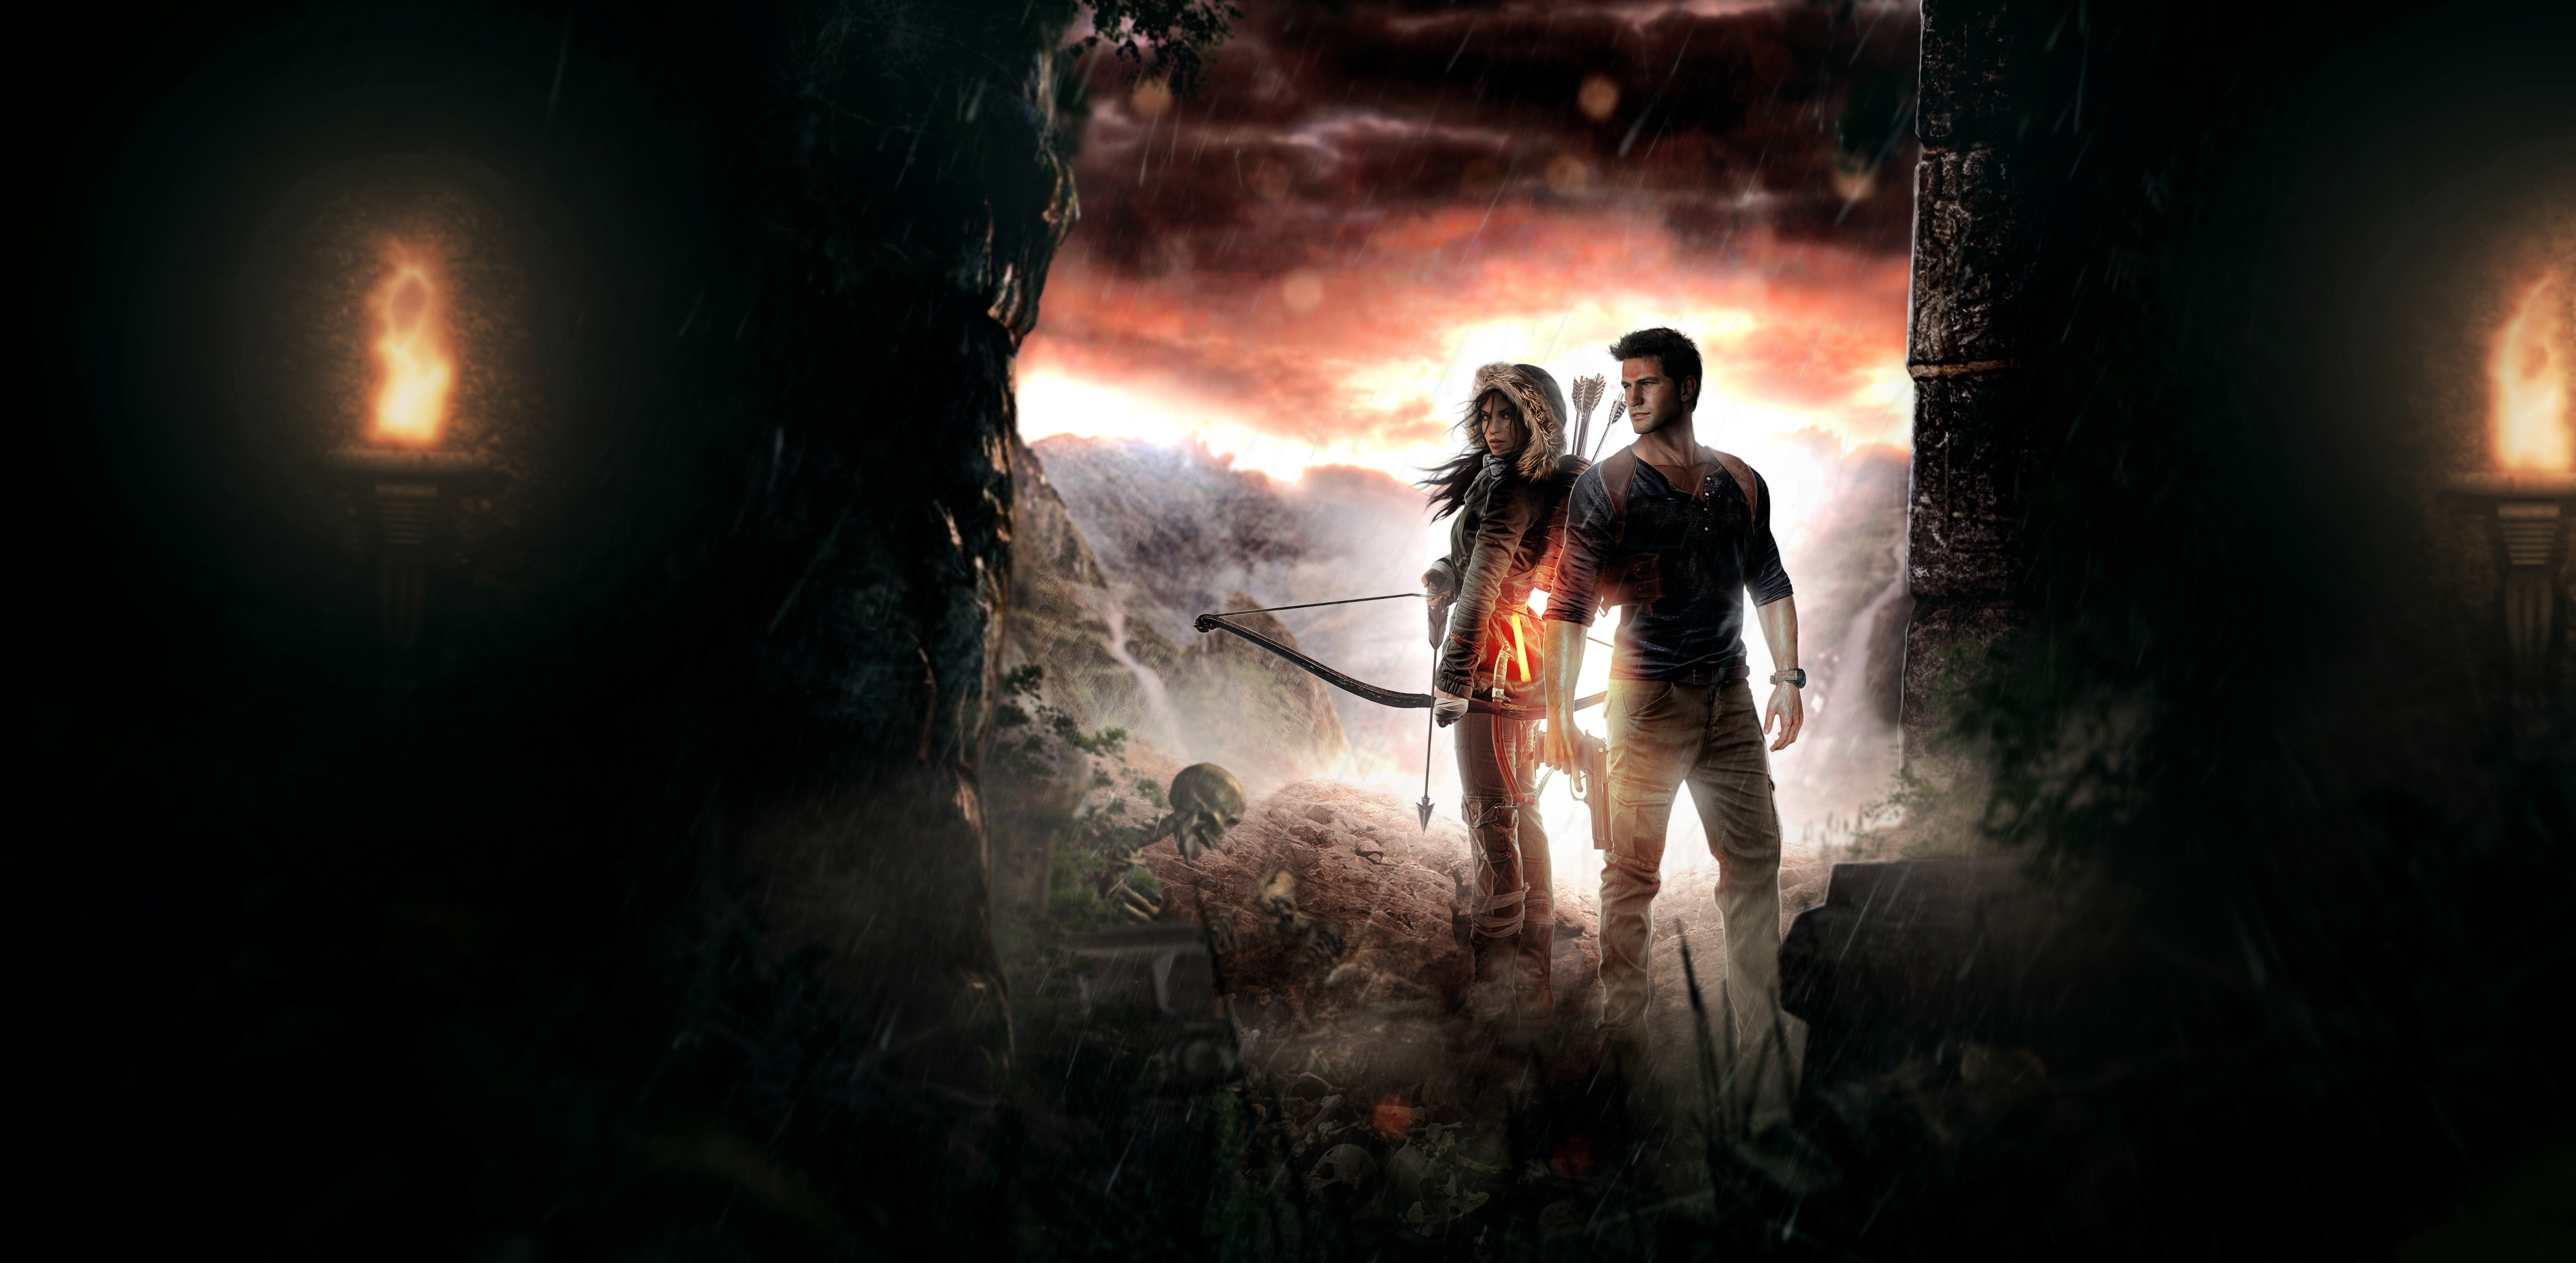 壁紙 5784x25 Rise Of The Tomb Raider アンチャーテッド 海賊王と最後の秘宝 ウォリアーズ Nathan Drake ララ クロフト ゲーム 少女 ダウンロード 写真